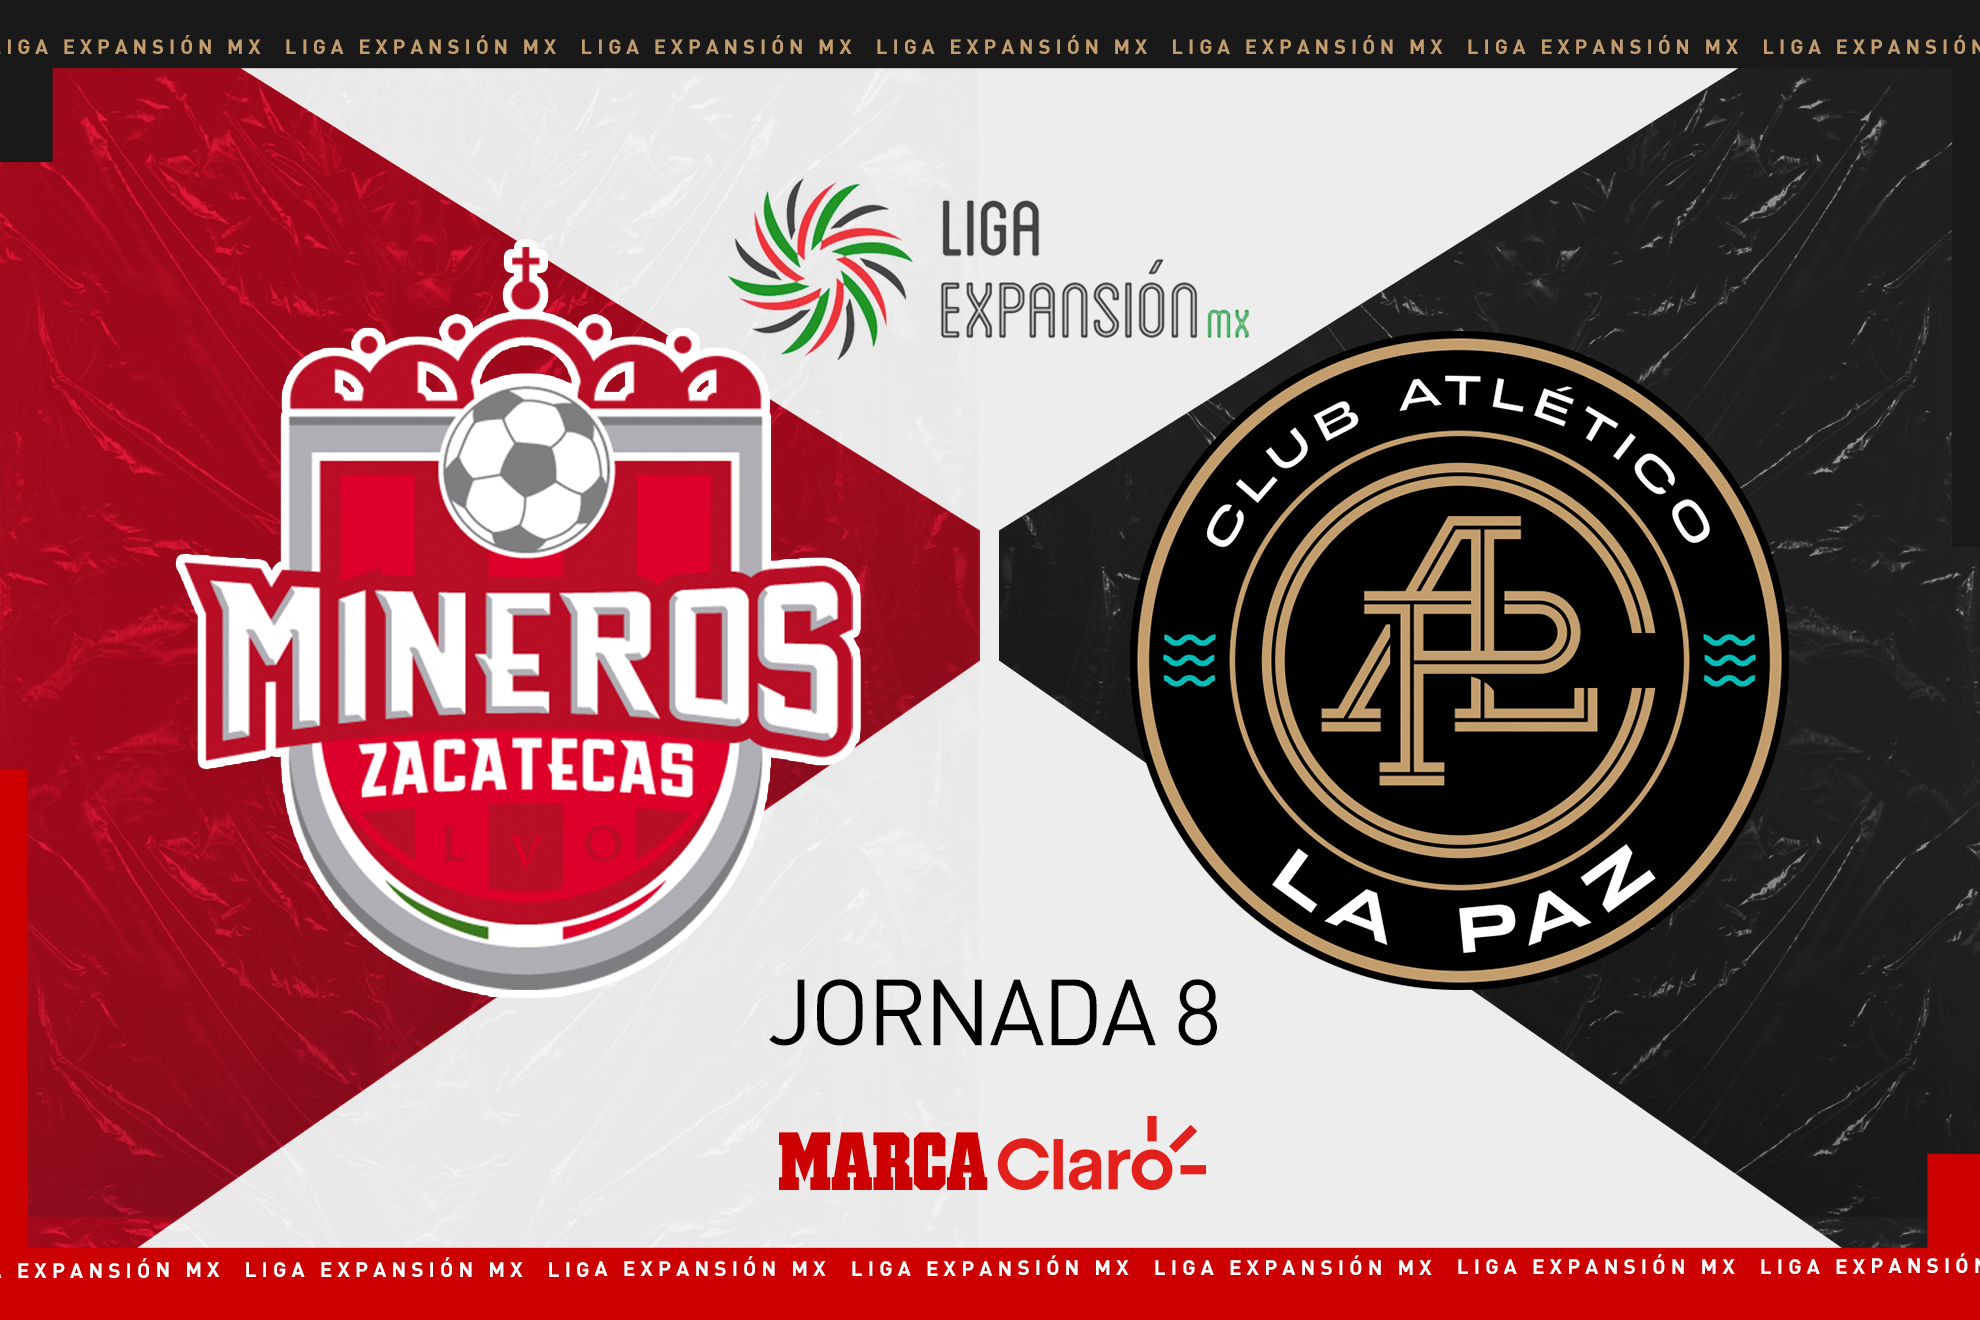 Mineros vs Club Atlético La Paz, en vivo el streaming online del partido de la jornada 8 del Apertura 2022 de la Liga Expansión MX